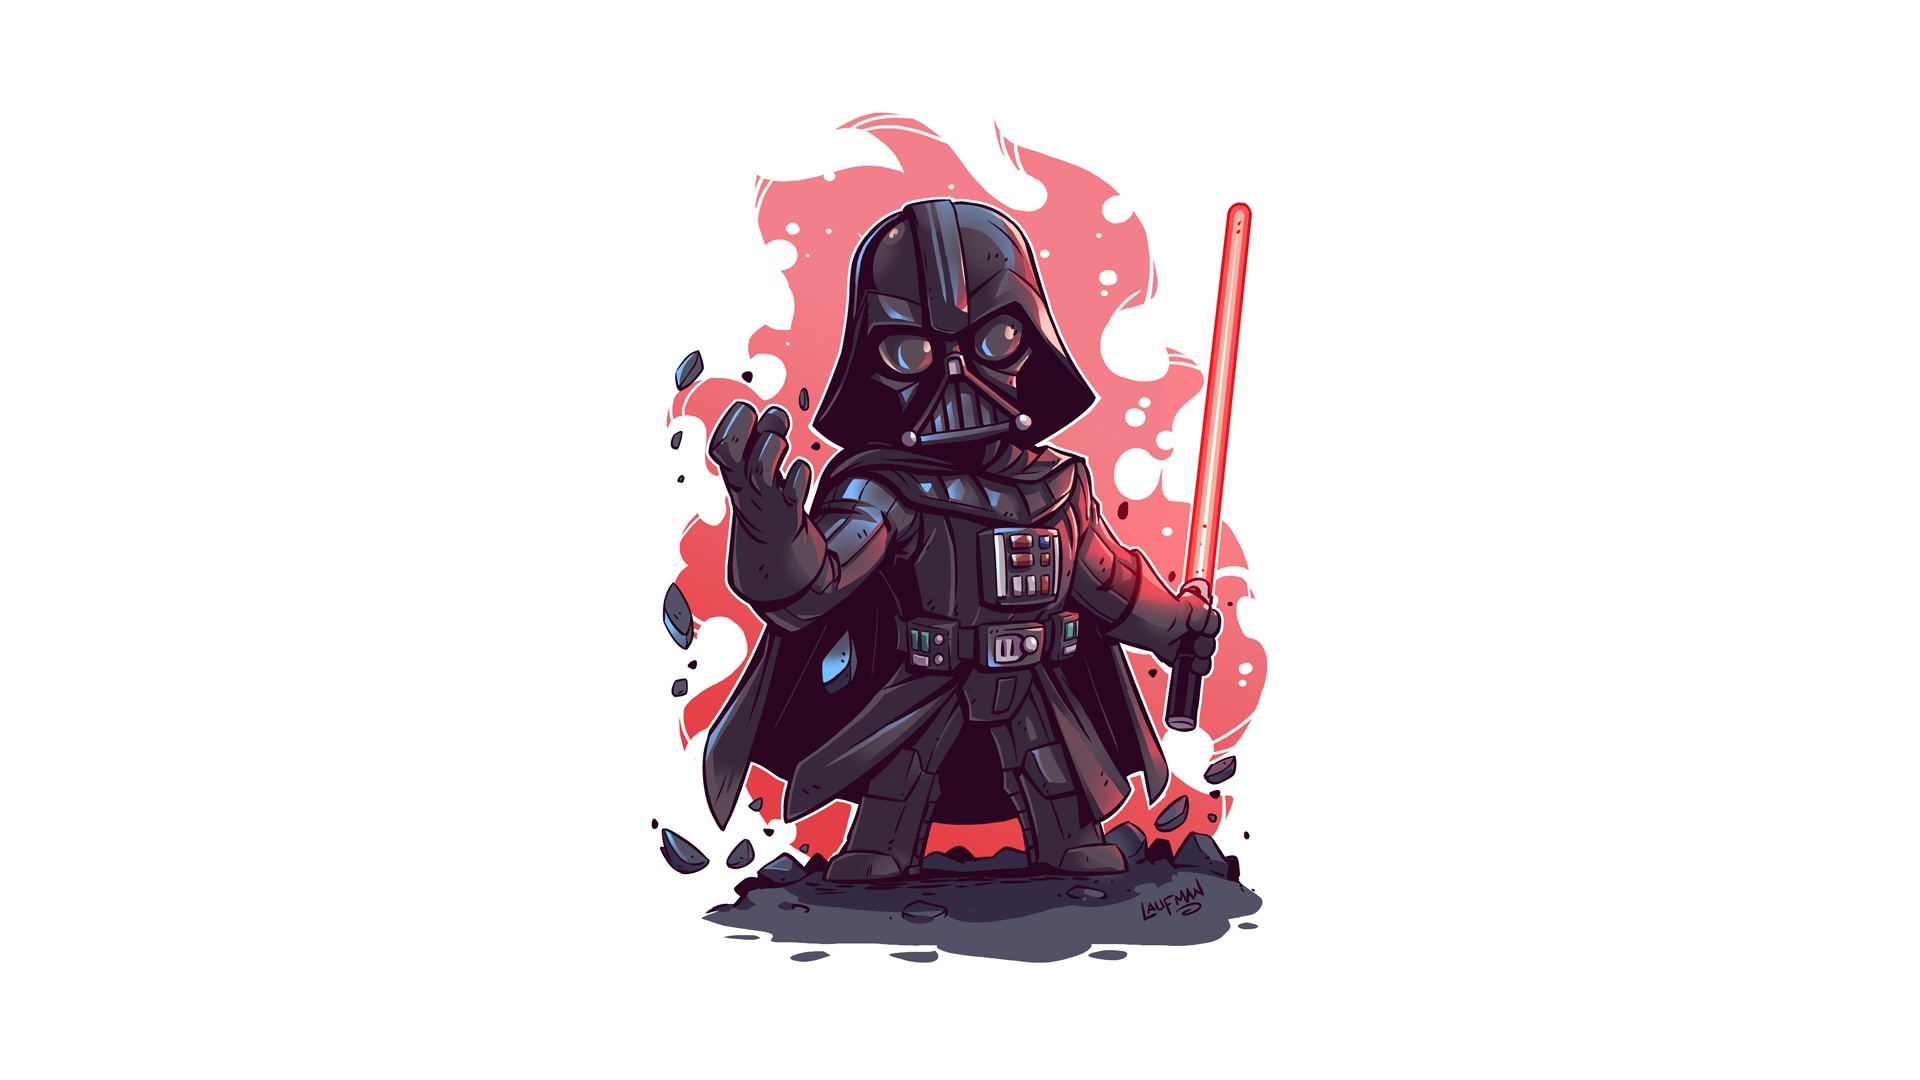 General 1920x1080 Darth Vader Star Wars simple background white background artwork Derek Laufman Star Wars Villains lightsaber